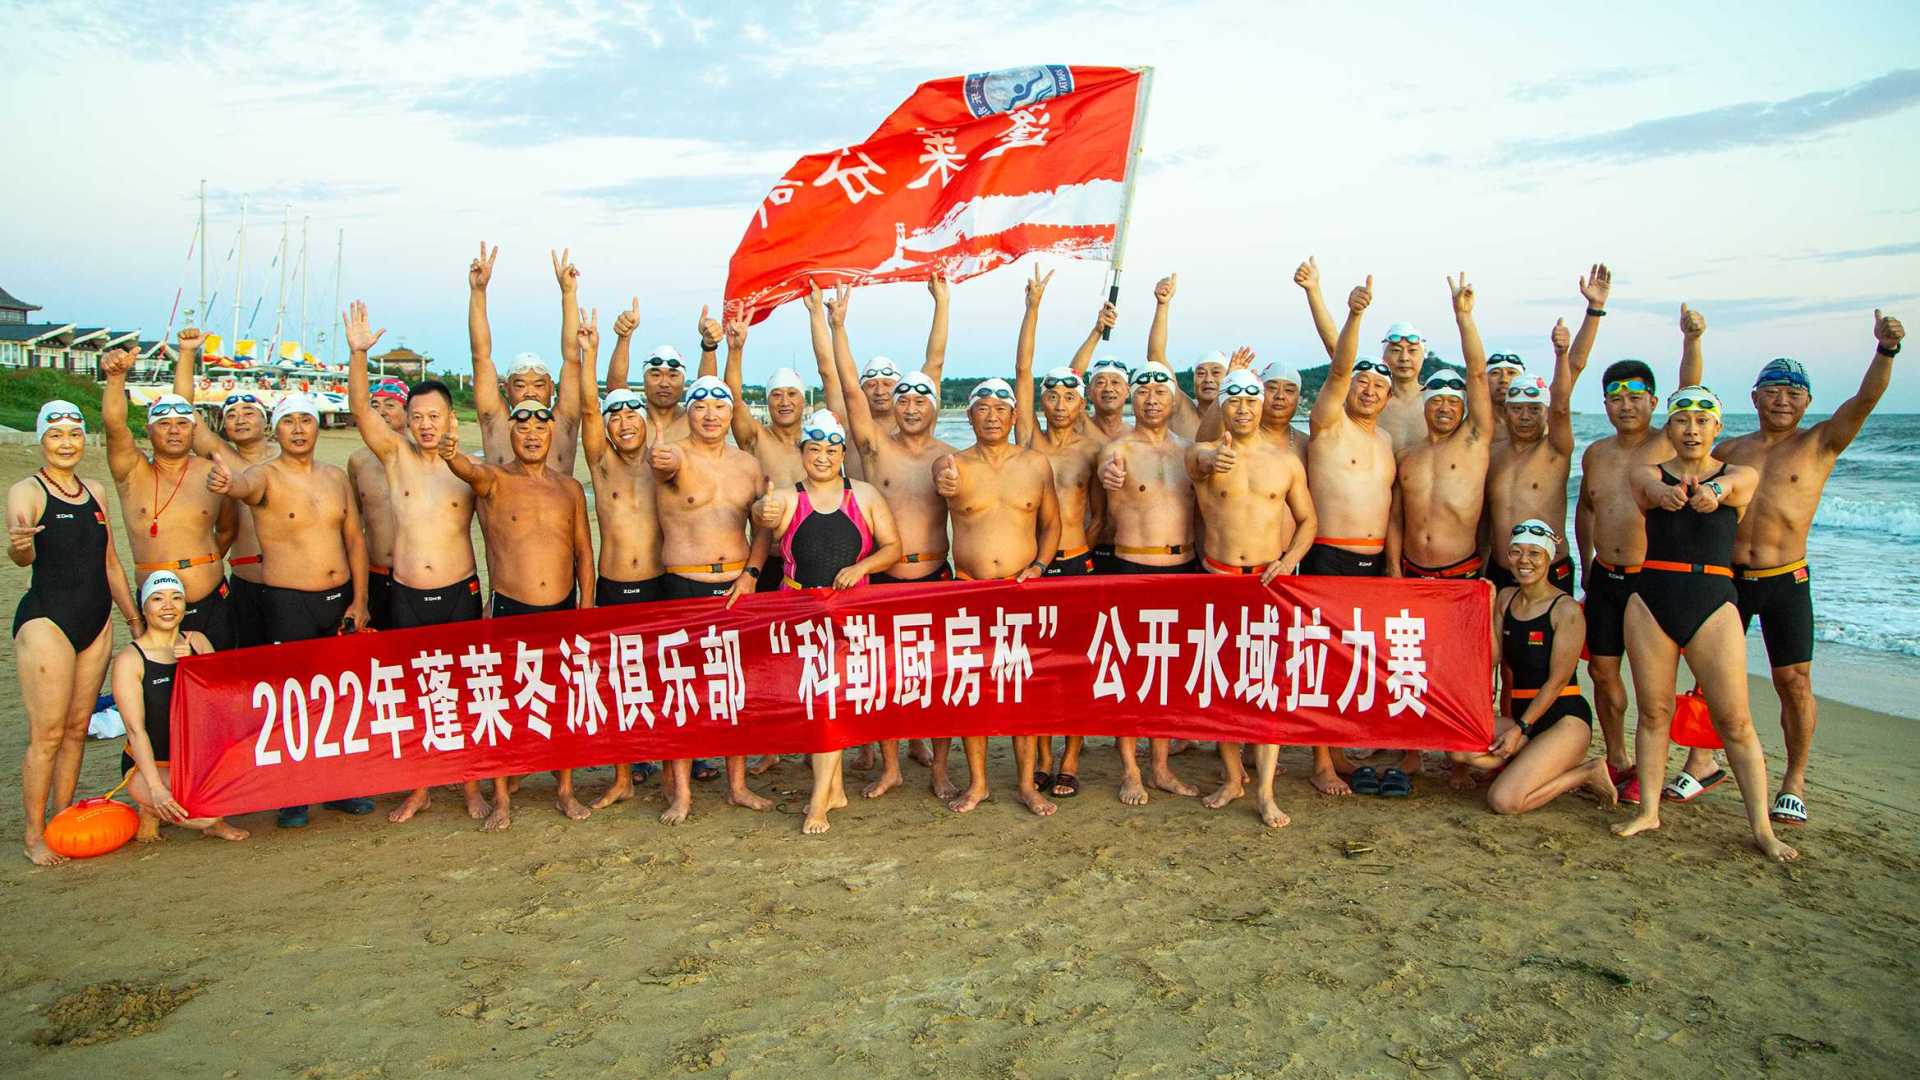 蓬莱冬泳俱乐部“科勒杯”公开海域拉力赛  烟台活水教育